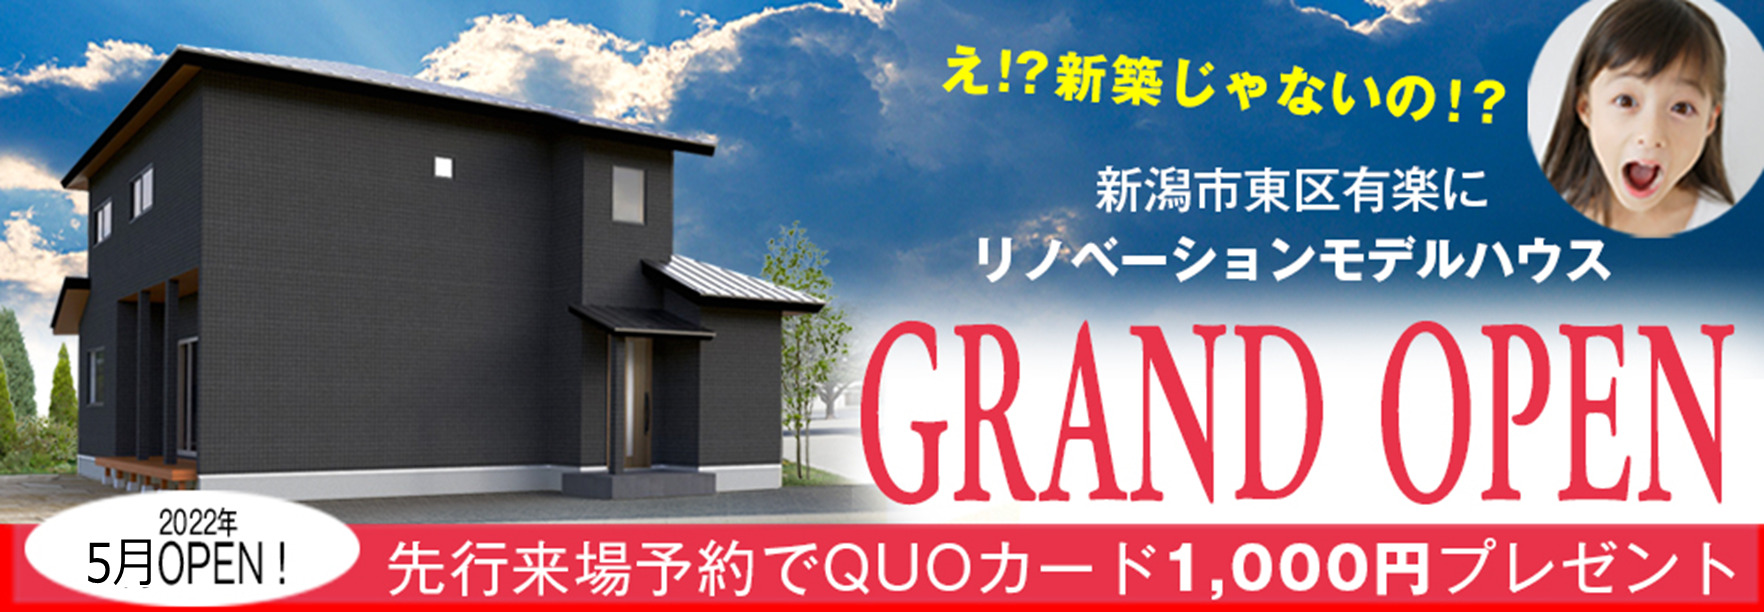 【2022年3月オープン】新潟市東区モデルハウス